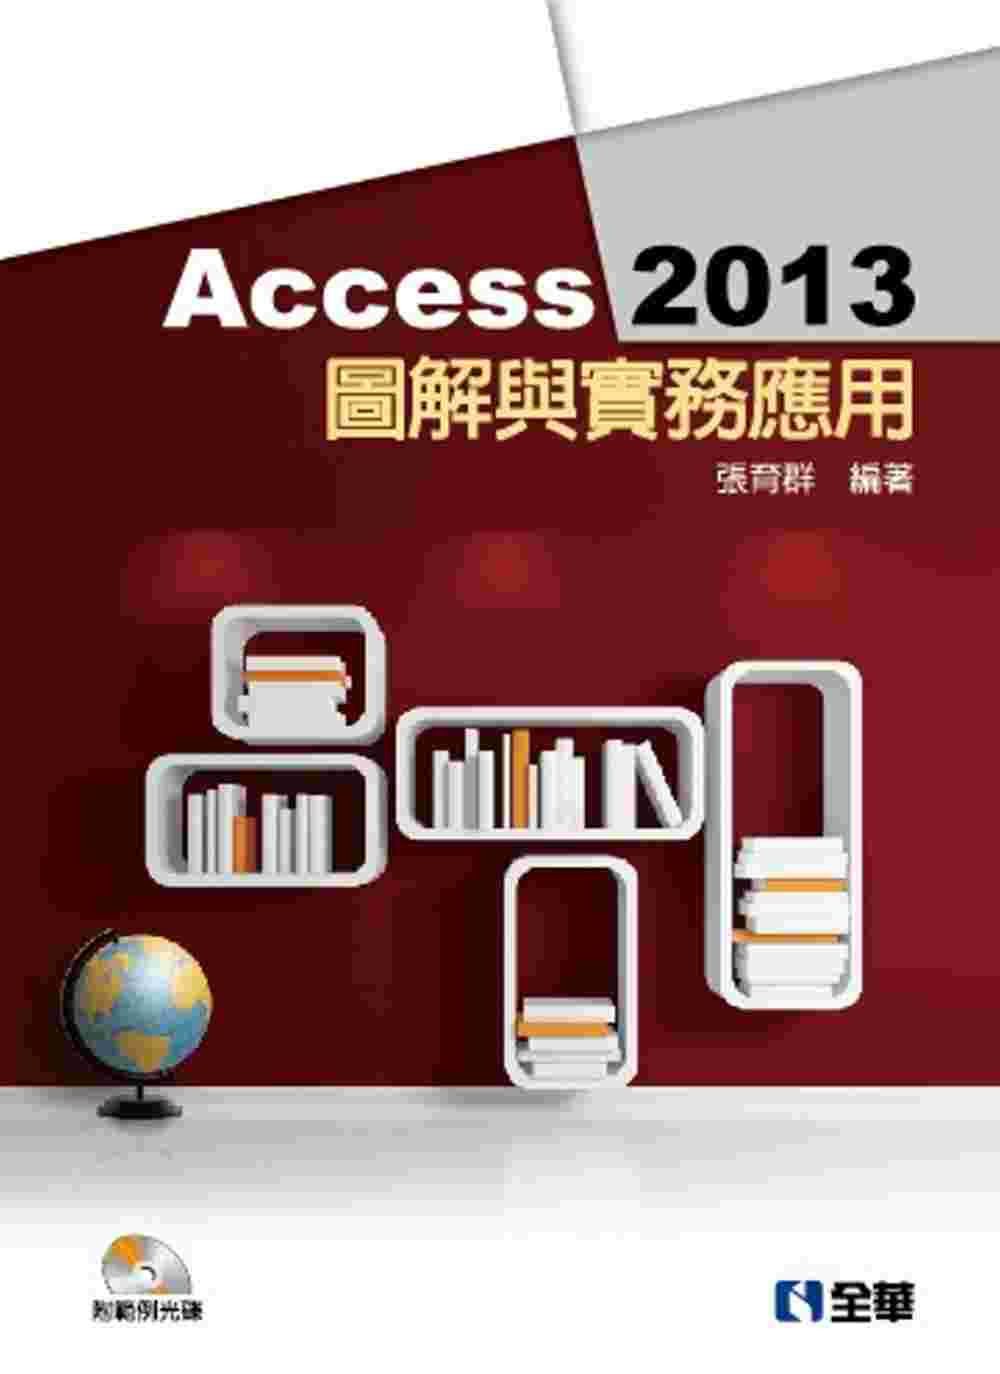 Access 2013圖解與實務應用(附範例光碟)